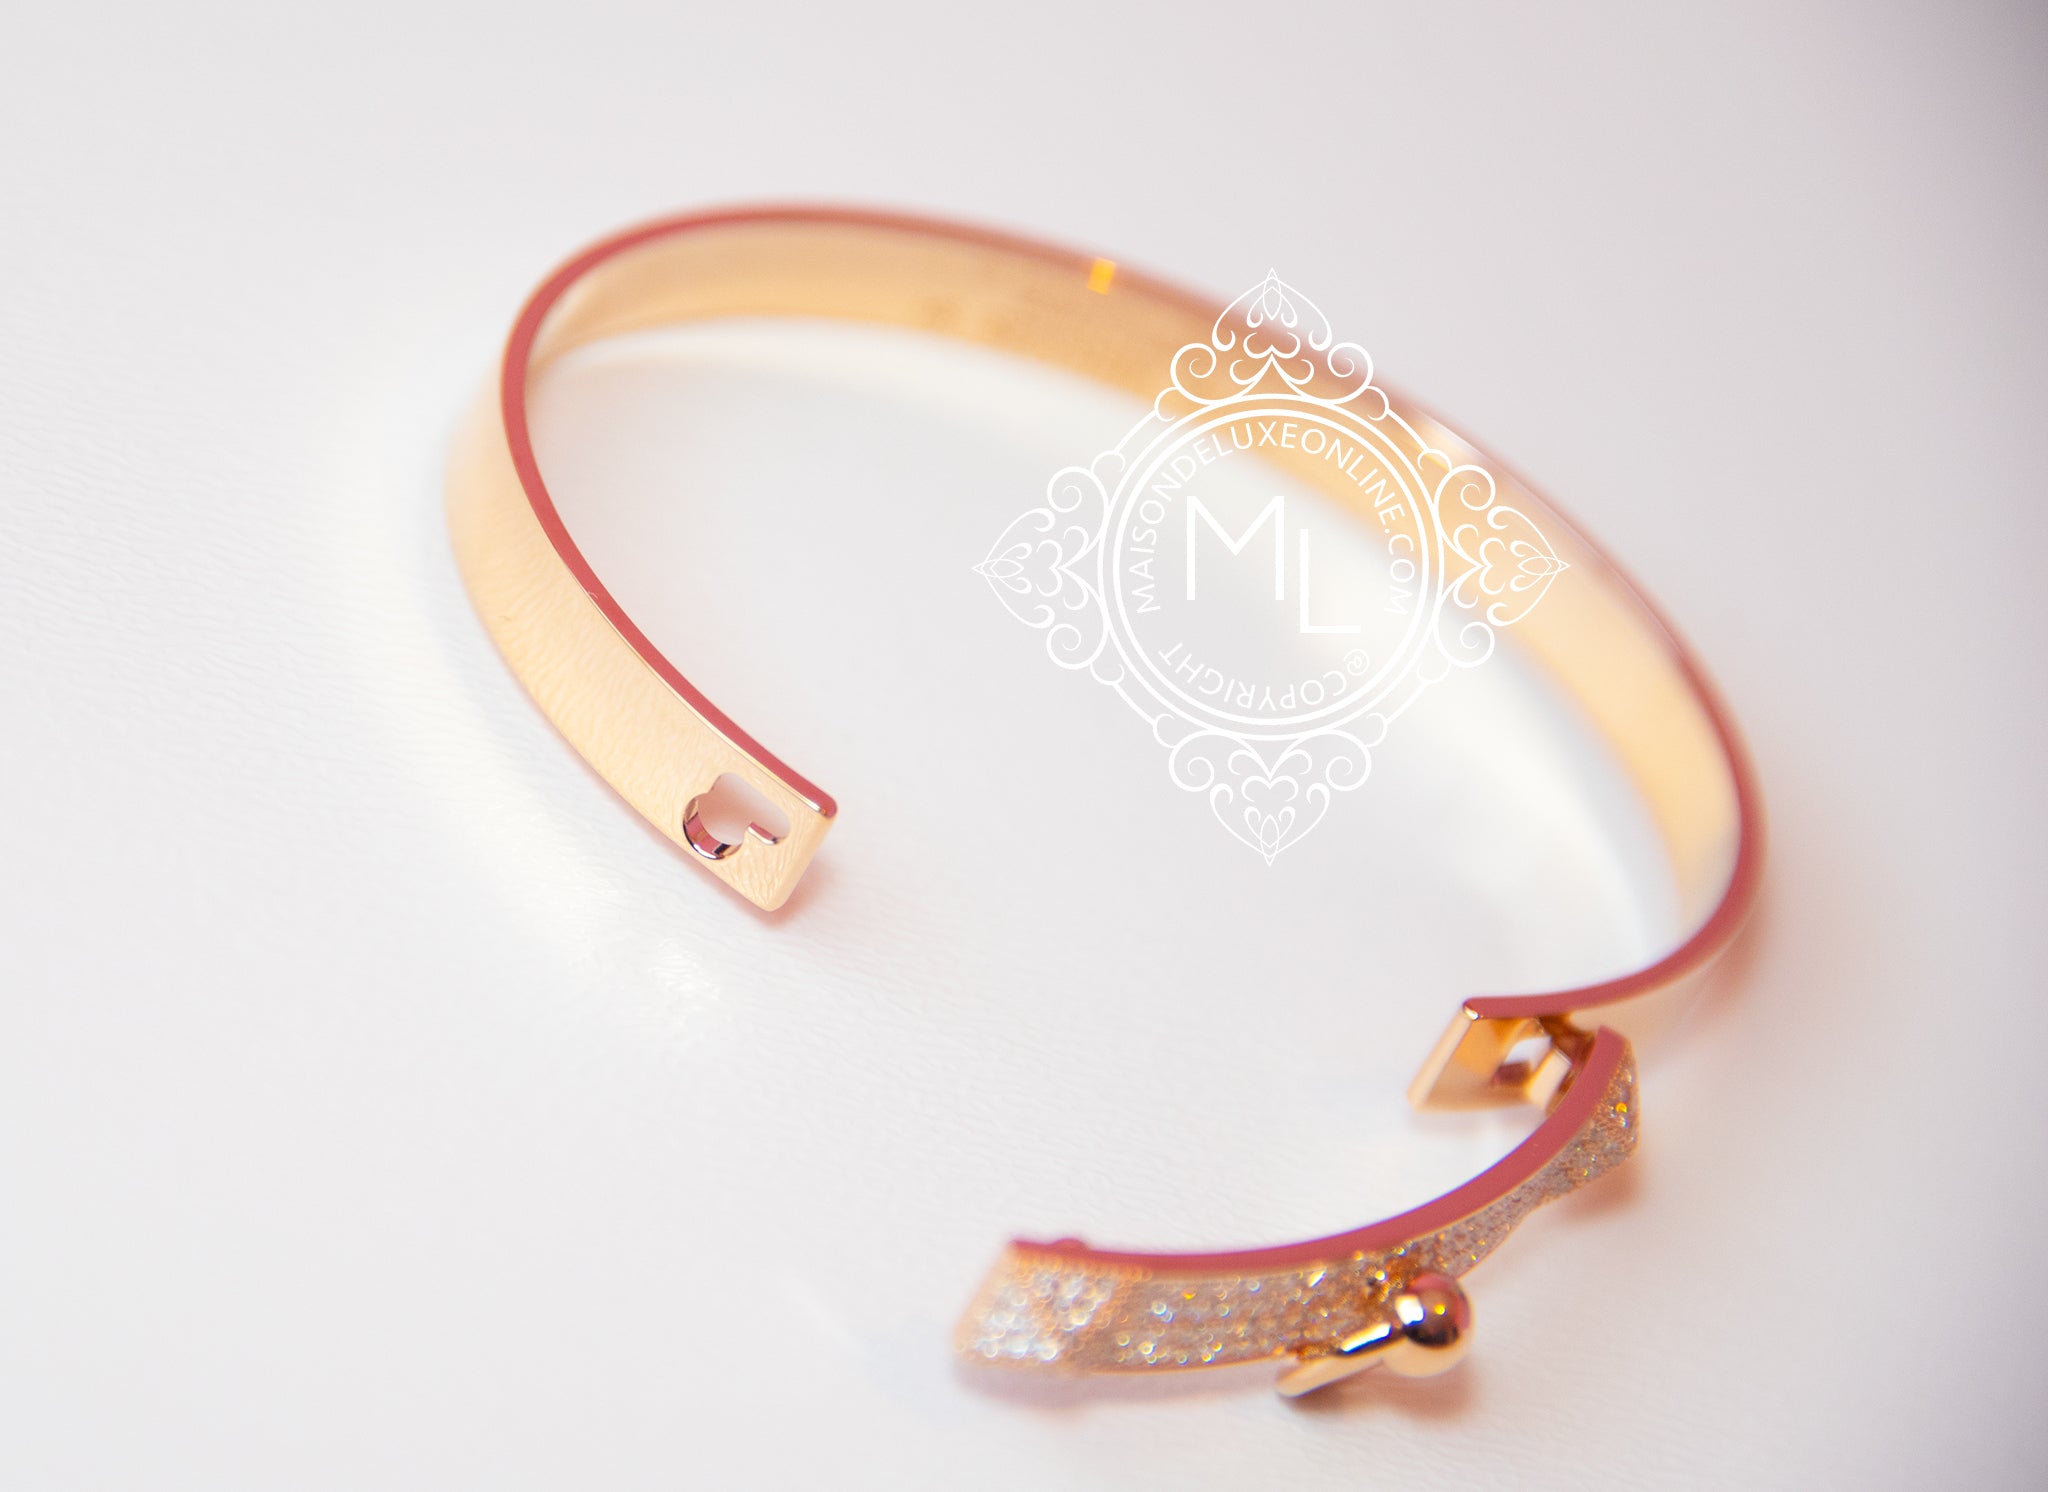 hermes cdc rose gold bracelet